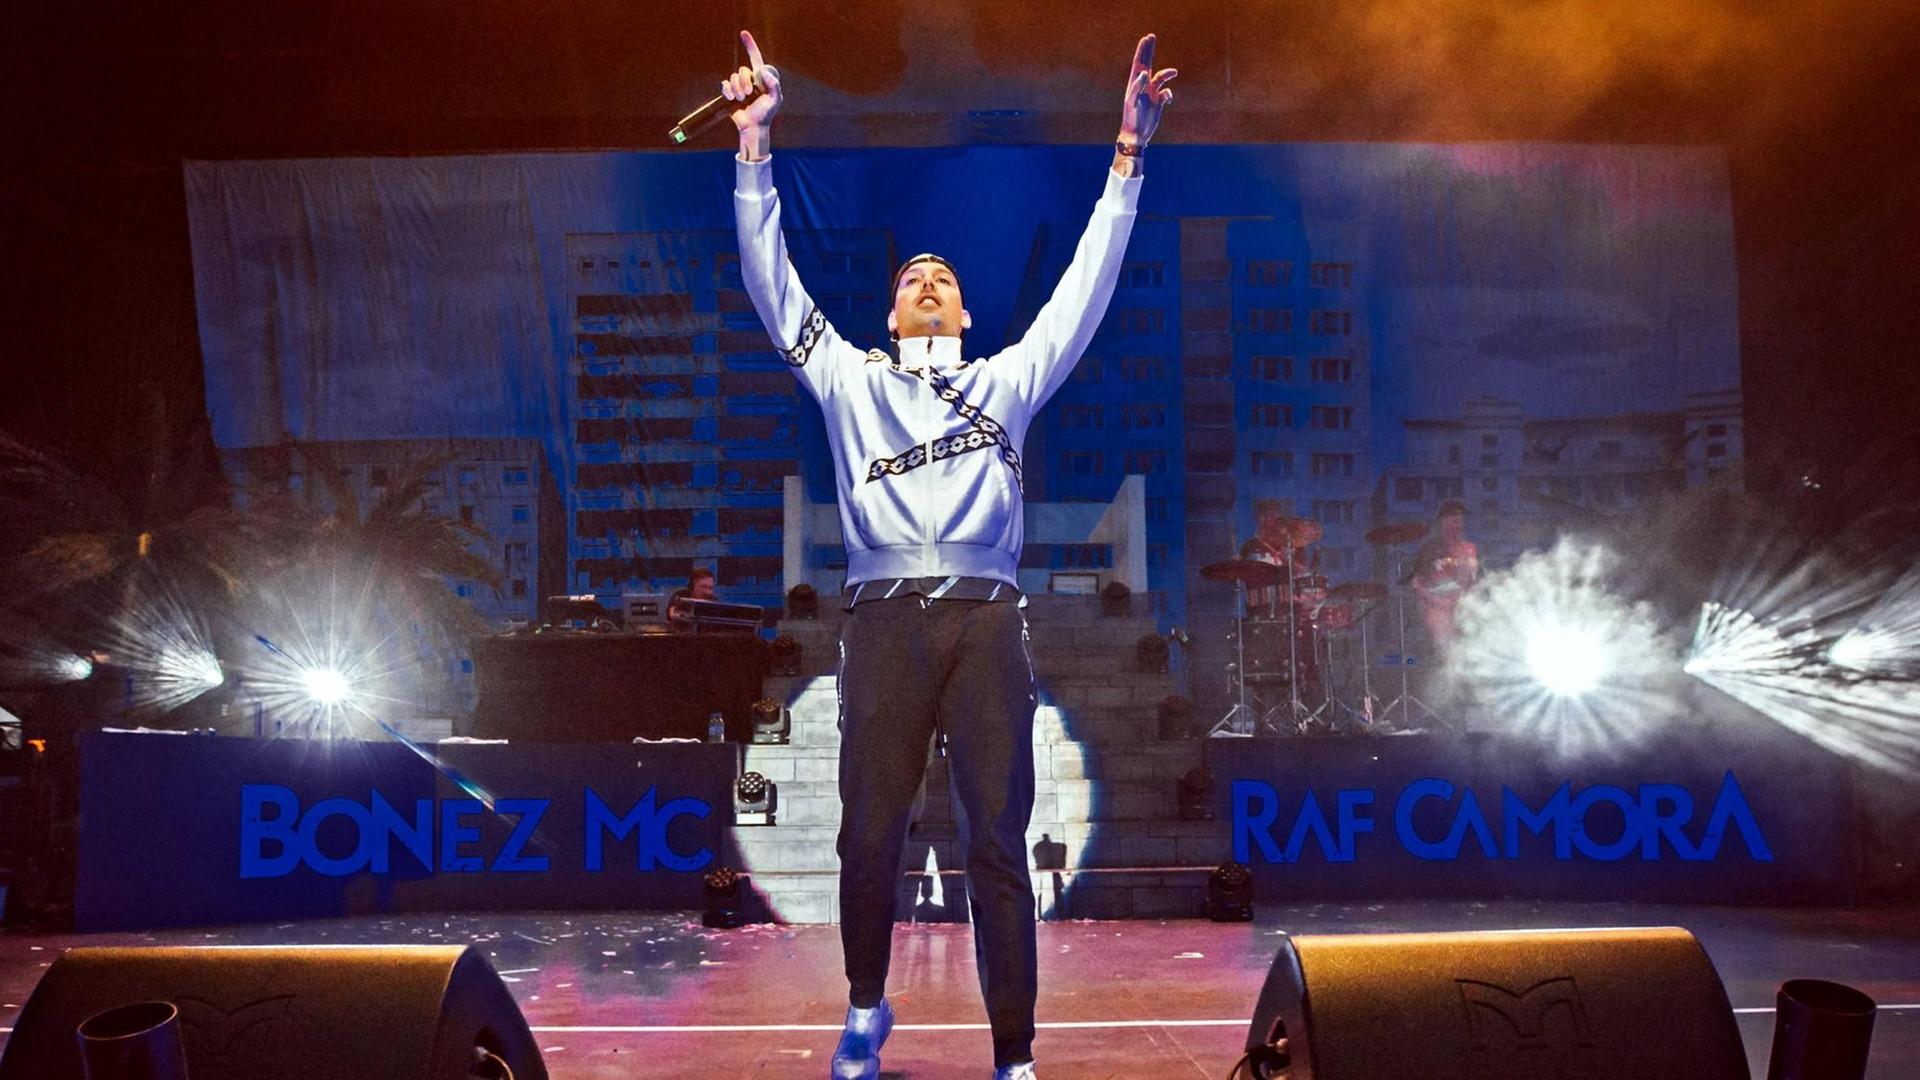 RAF Camora (bürgerlich Raphael Ragucci) während eines Auftrittes im Rahmen des Sputnik SpringBreak Festival 2018